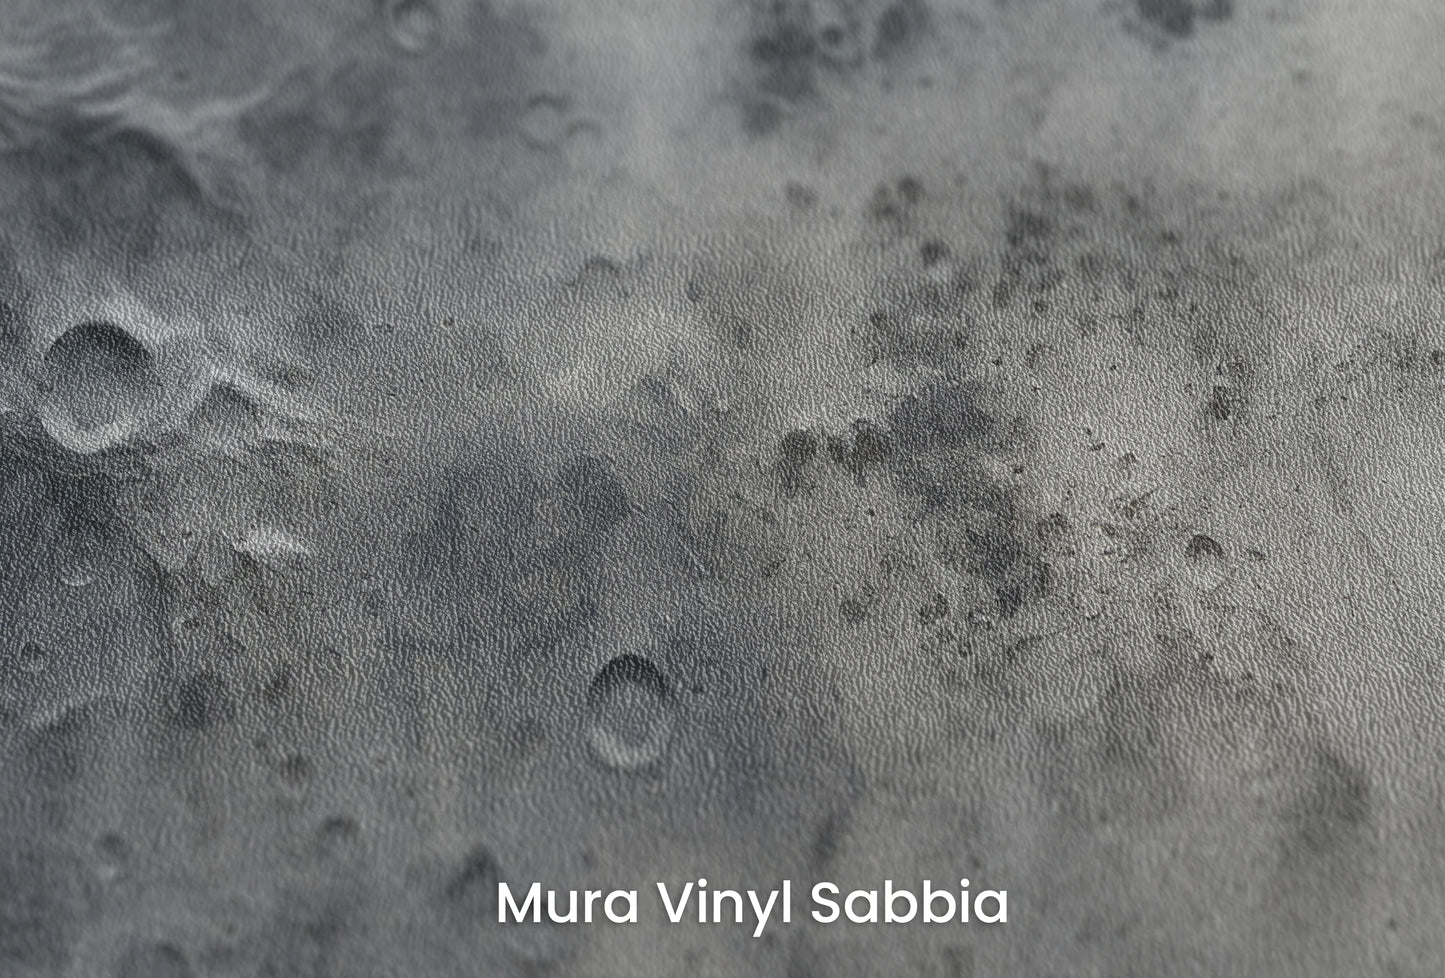 Zbliżenie na artystyczną fototapetę o nazwie Lunar Shadows na podłożu Mura Vinyl Sabbia struktura grubego ziarna piasku.